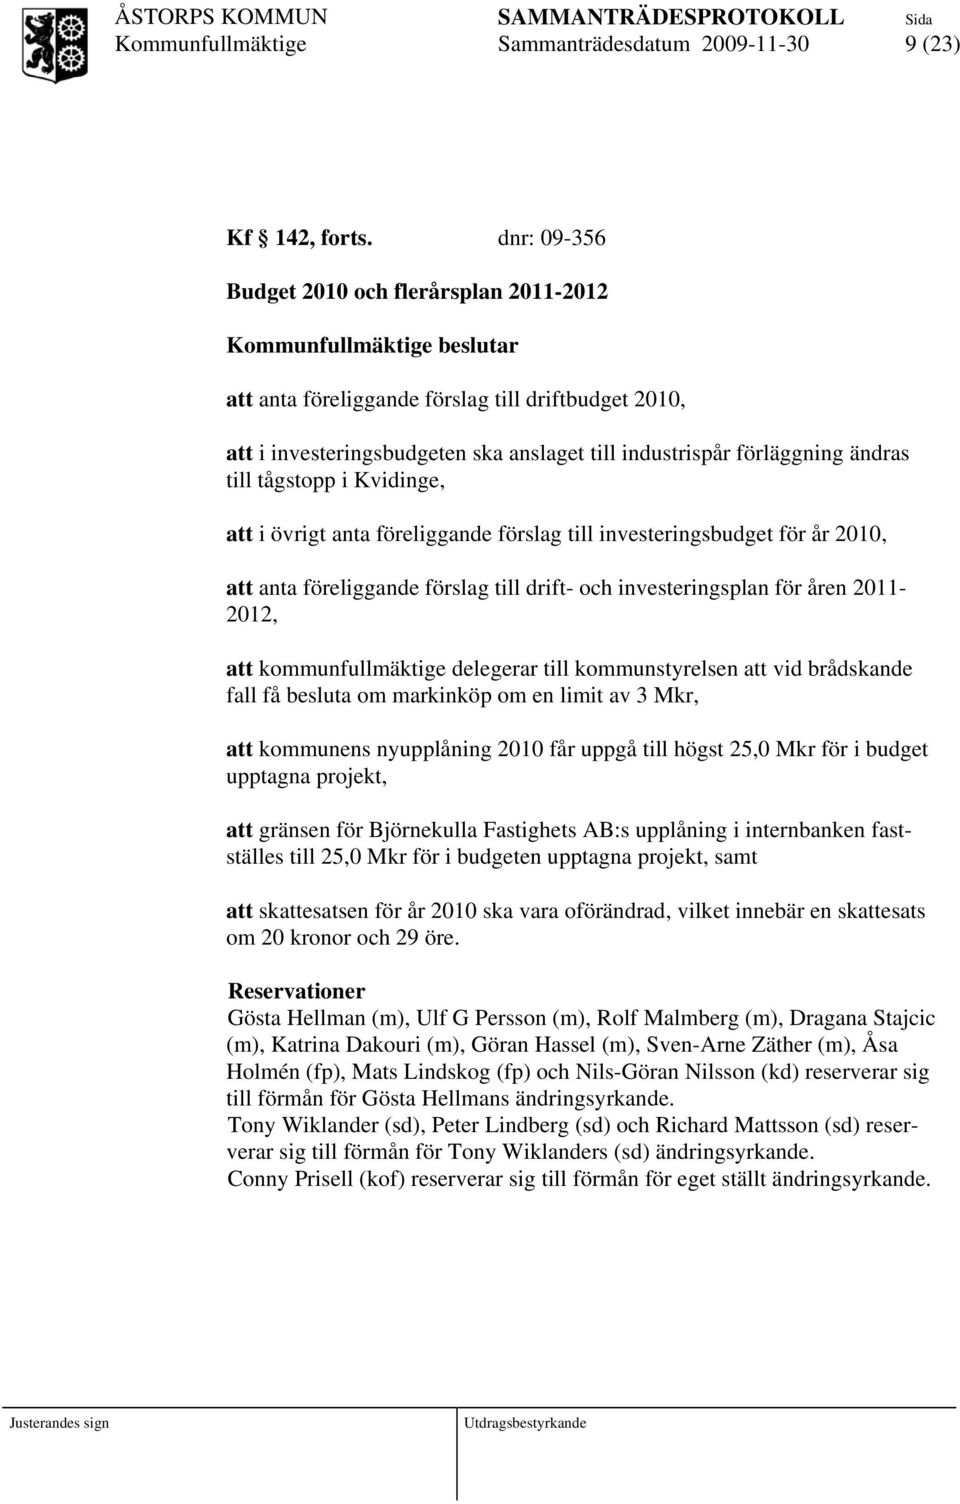 tågstopp i Kvidinge, att i övrigt anta föreliggande förslag till investeringsbudget för år 2010, att anta föreliggande förslag till drift- och investeringsplan för åren 2011-2012, att